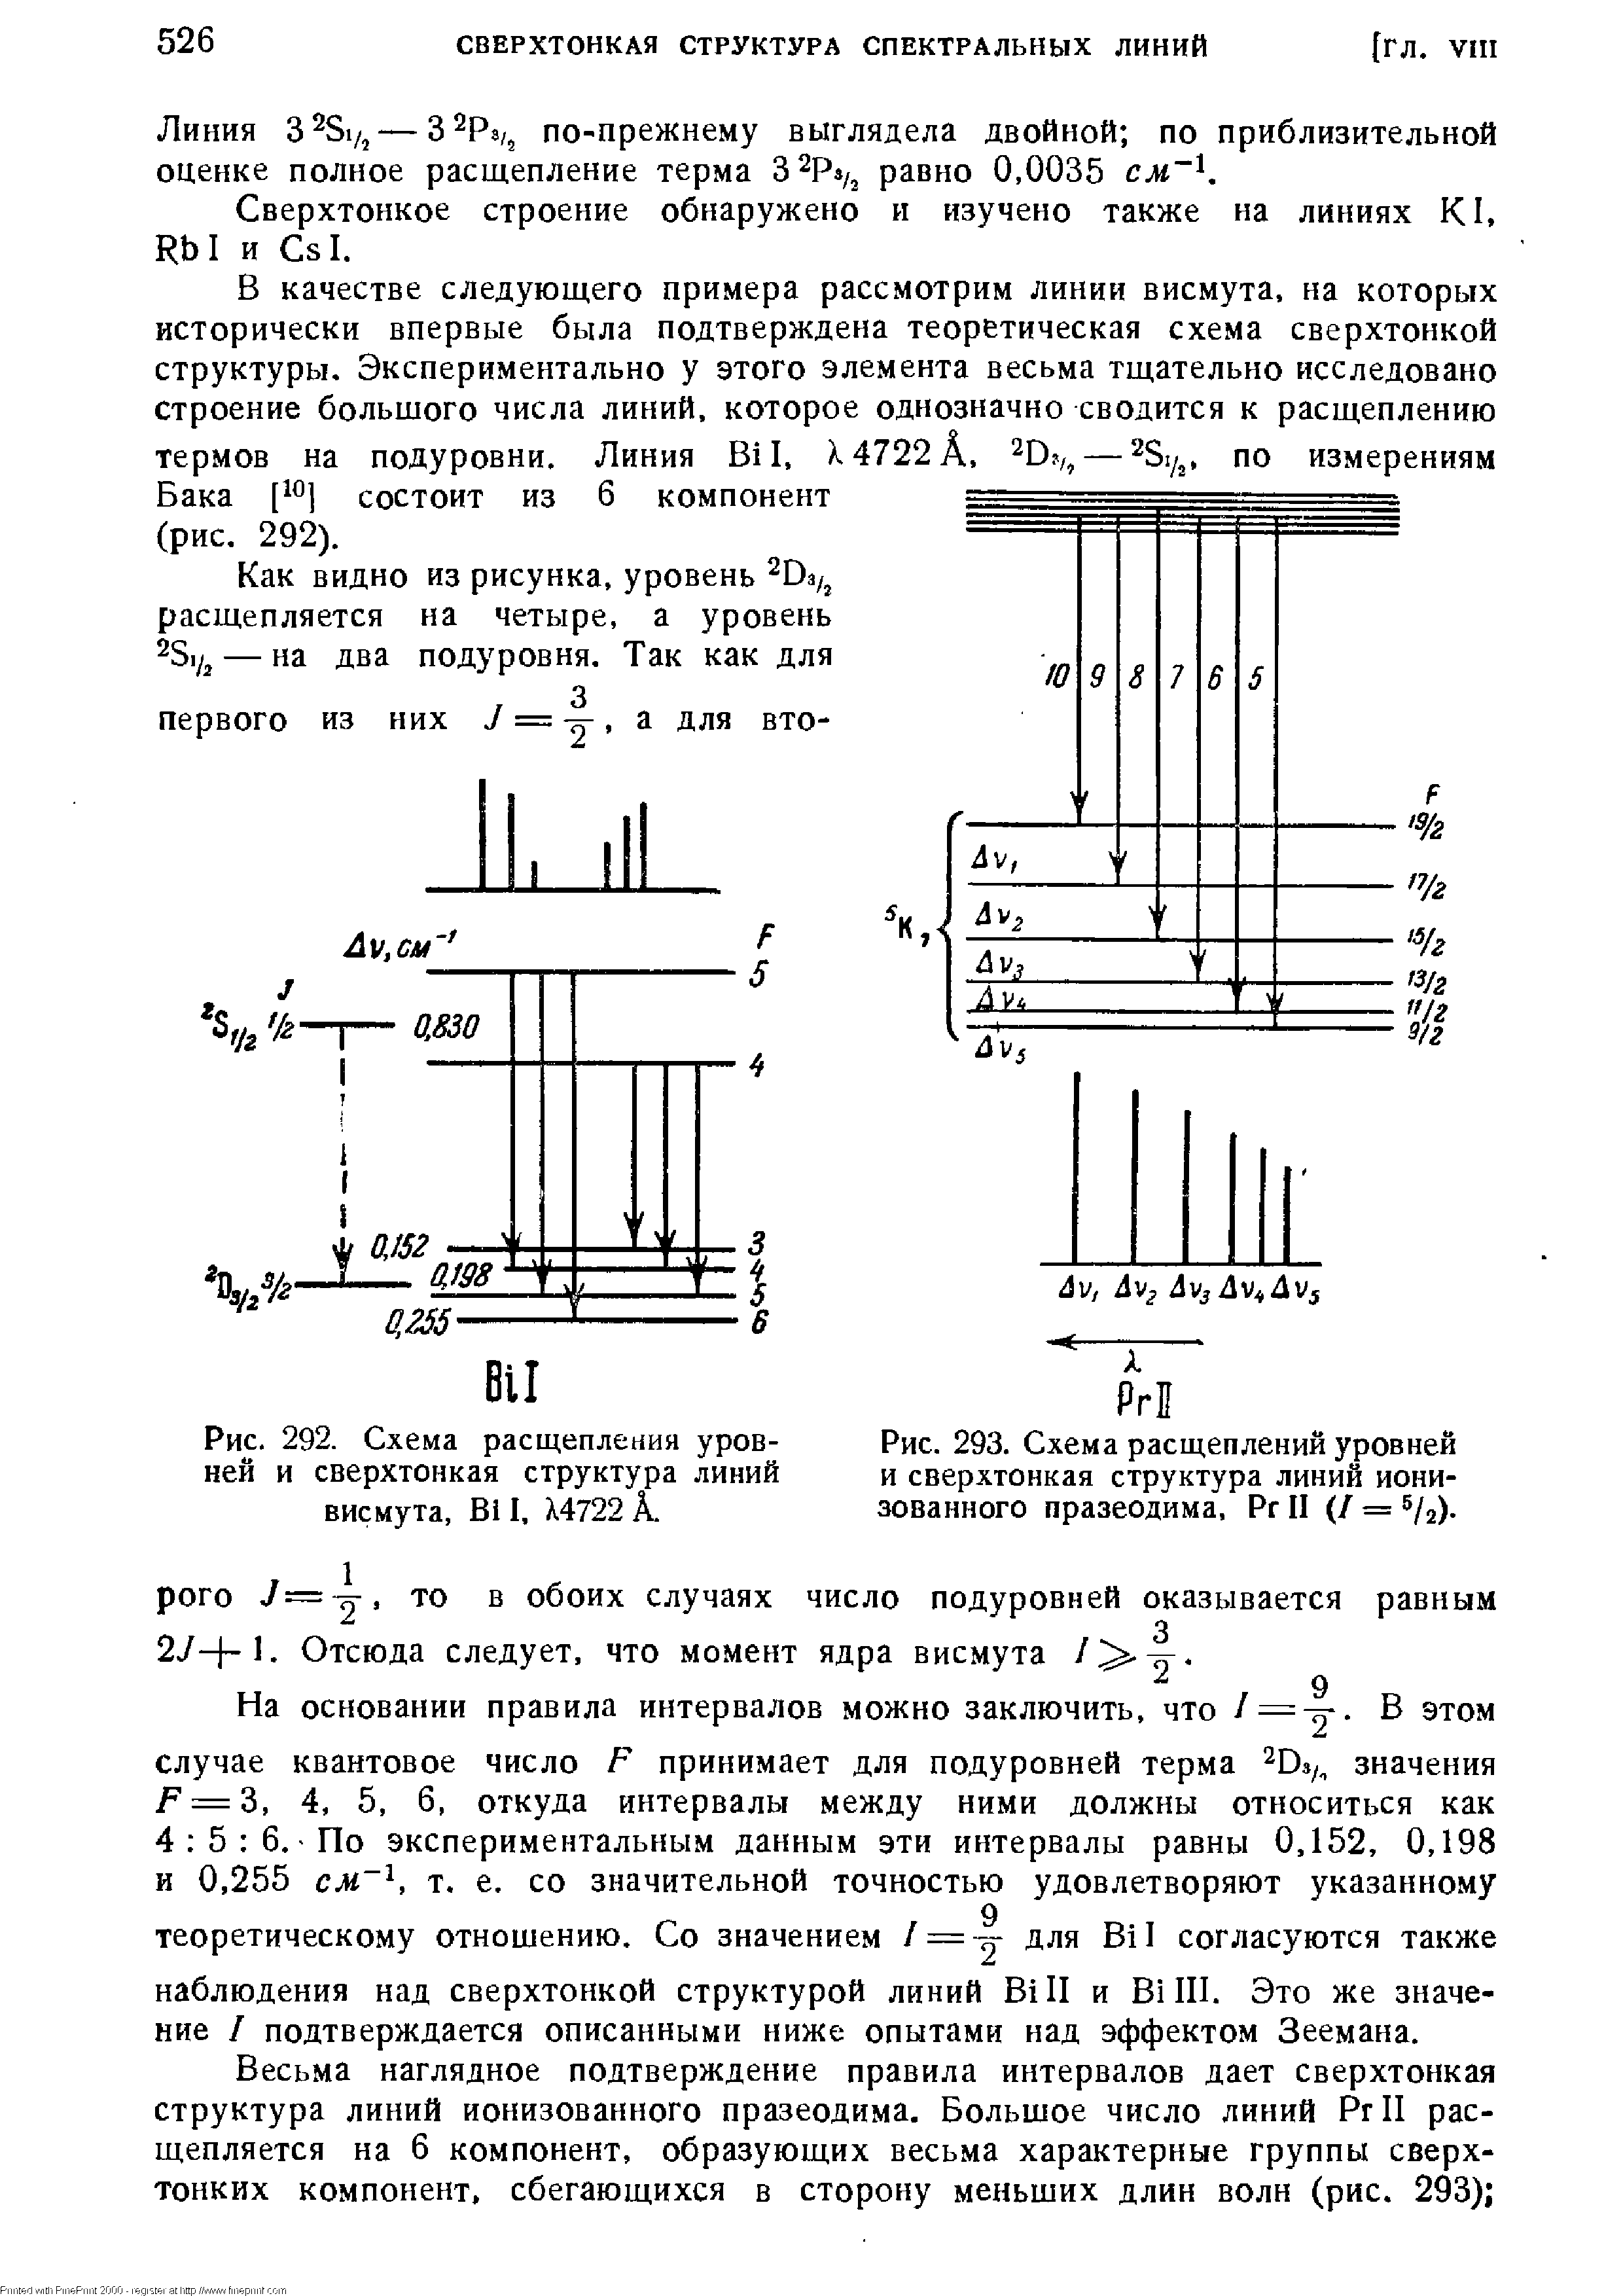 Рис. 293. Схема расщеплений уровней и сверхтонкая структура линий ионизованного празеодима, Рг II (/ = 5/а).
